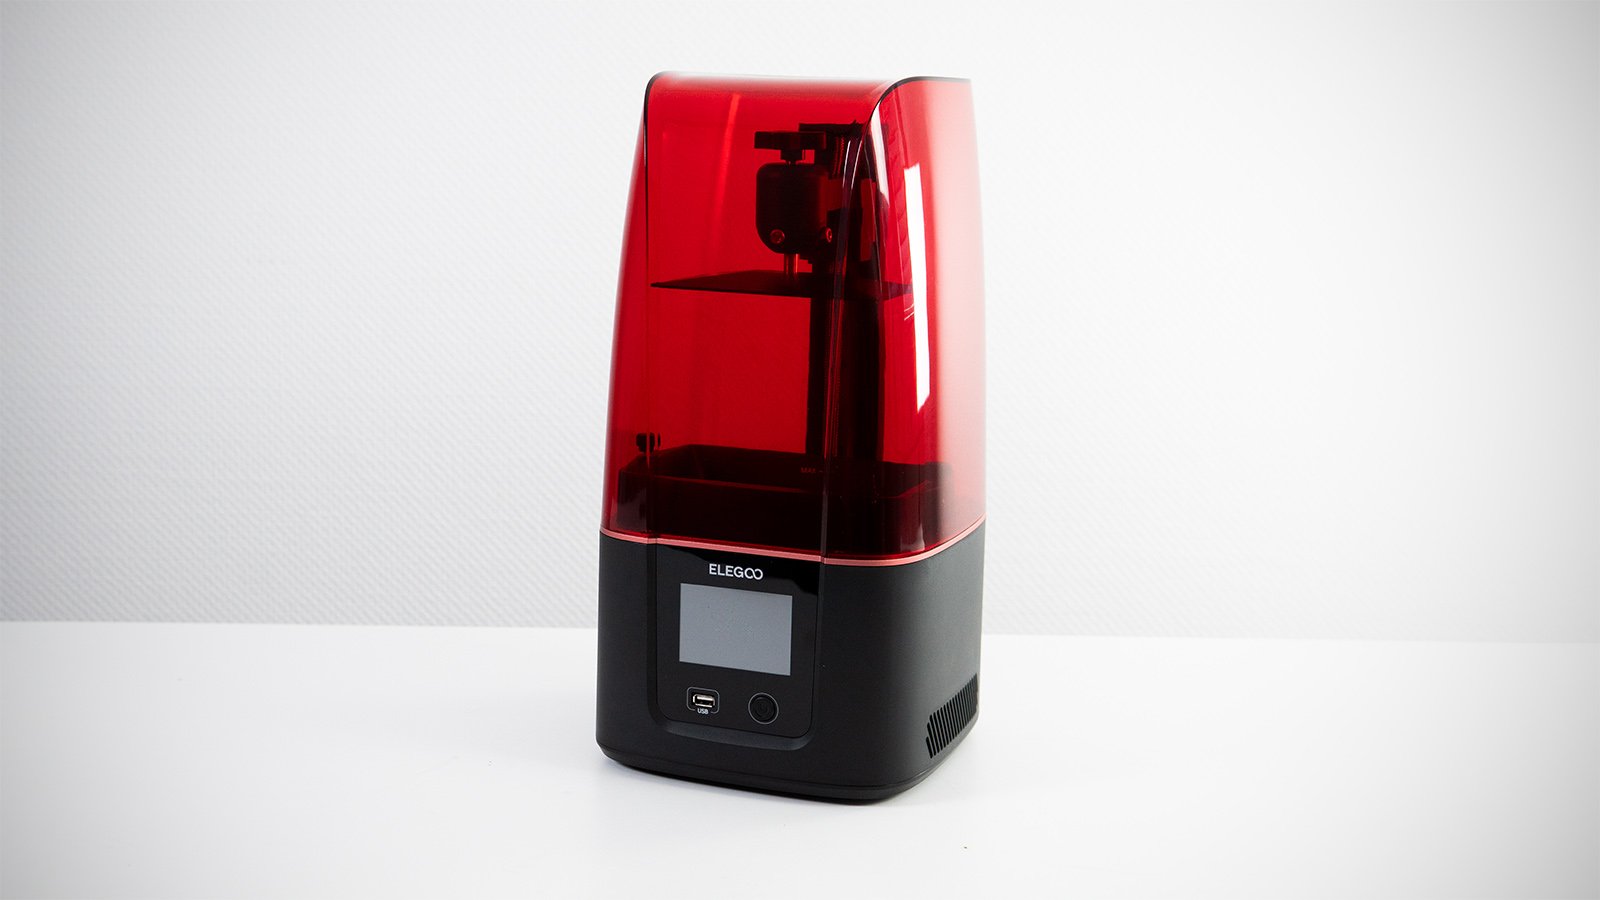 kool Afdaling Beschuldiging Elegoo Mars 3 Review: The Best Resin 3D Printer | All3DP